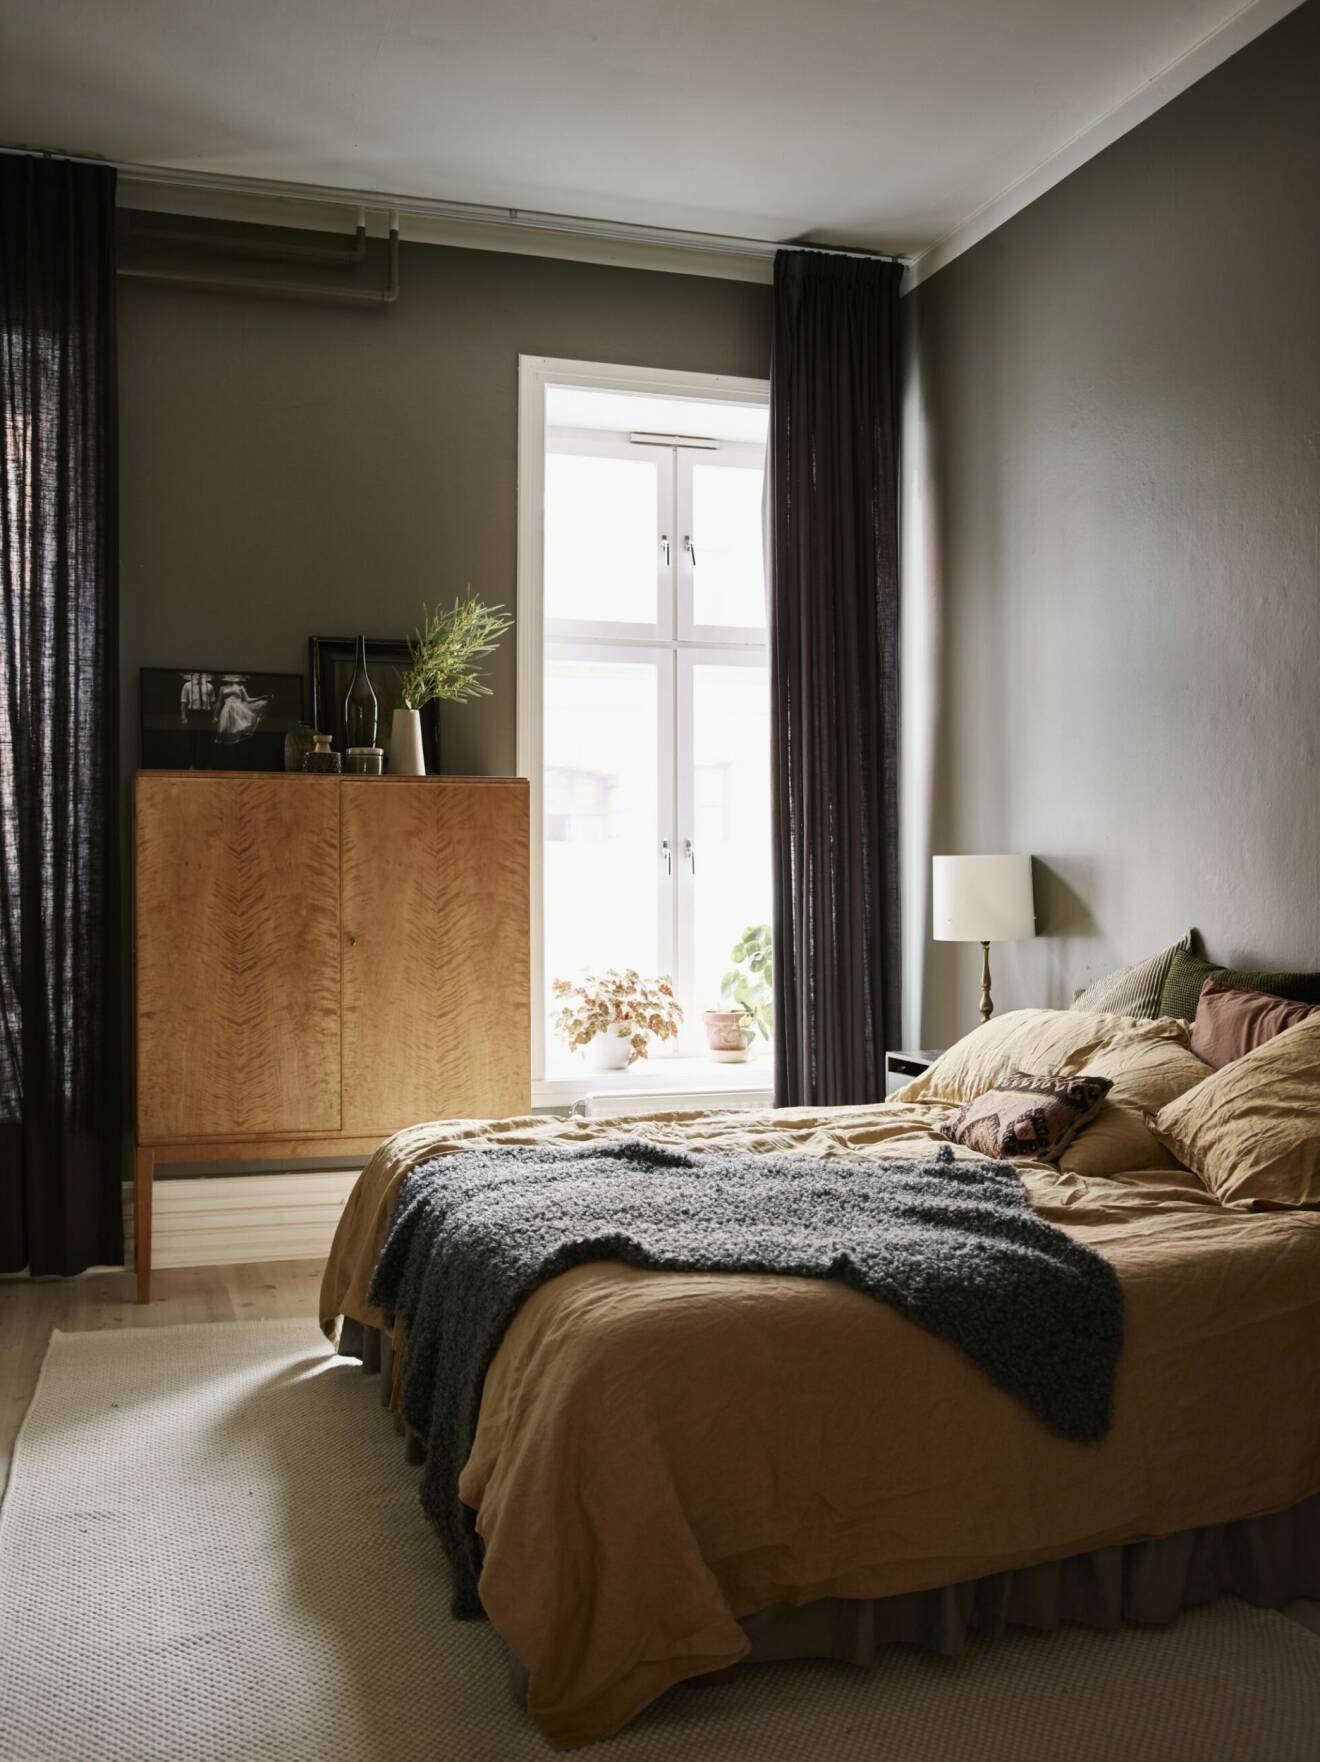 Sovrummet går i jordnära toner med väggar i ljusbrunt och textilier och möbler i olika nyanser av brunt